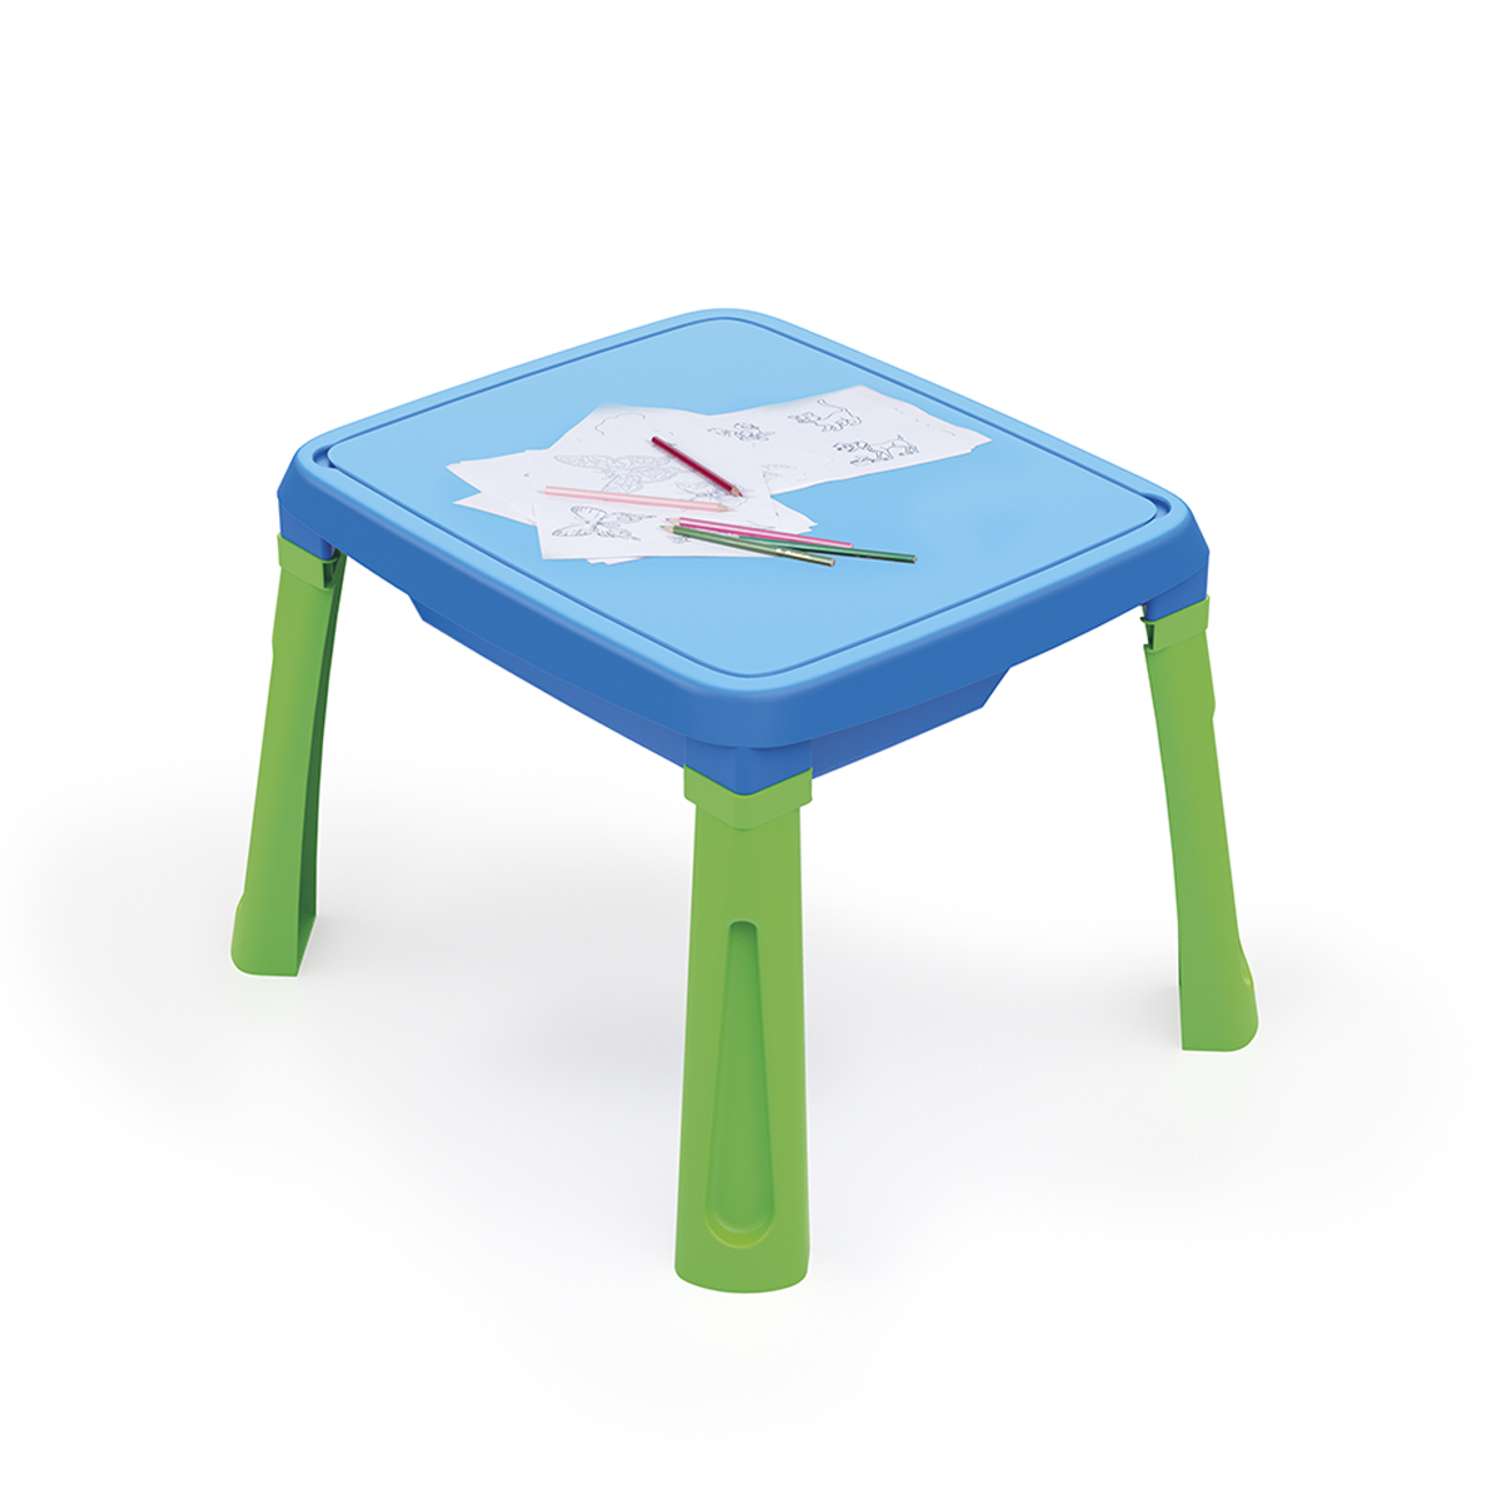 Песочница игровая Dolu 3в1 color песок-вода-столик с аксессуарами - фото 2